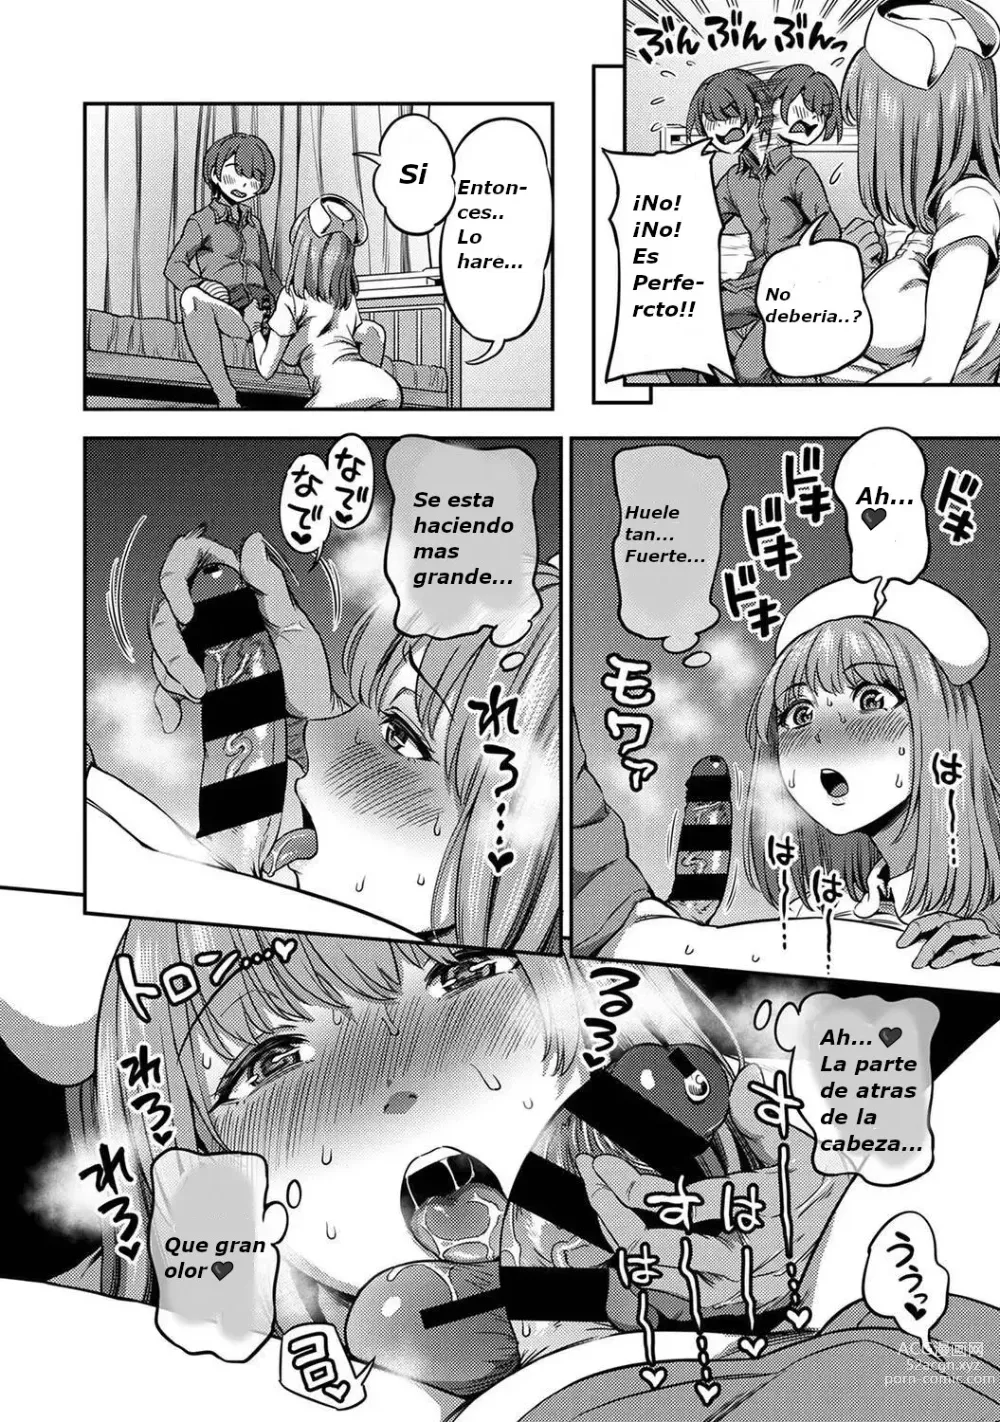 Page 17 of manga 